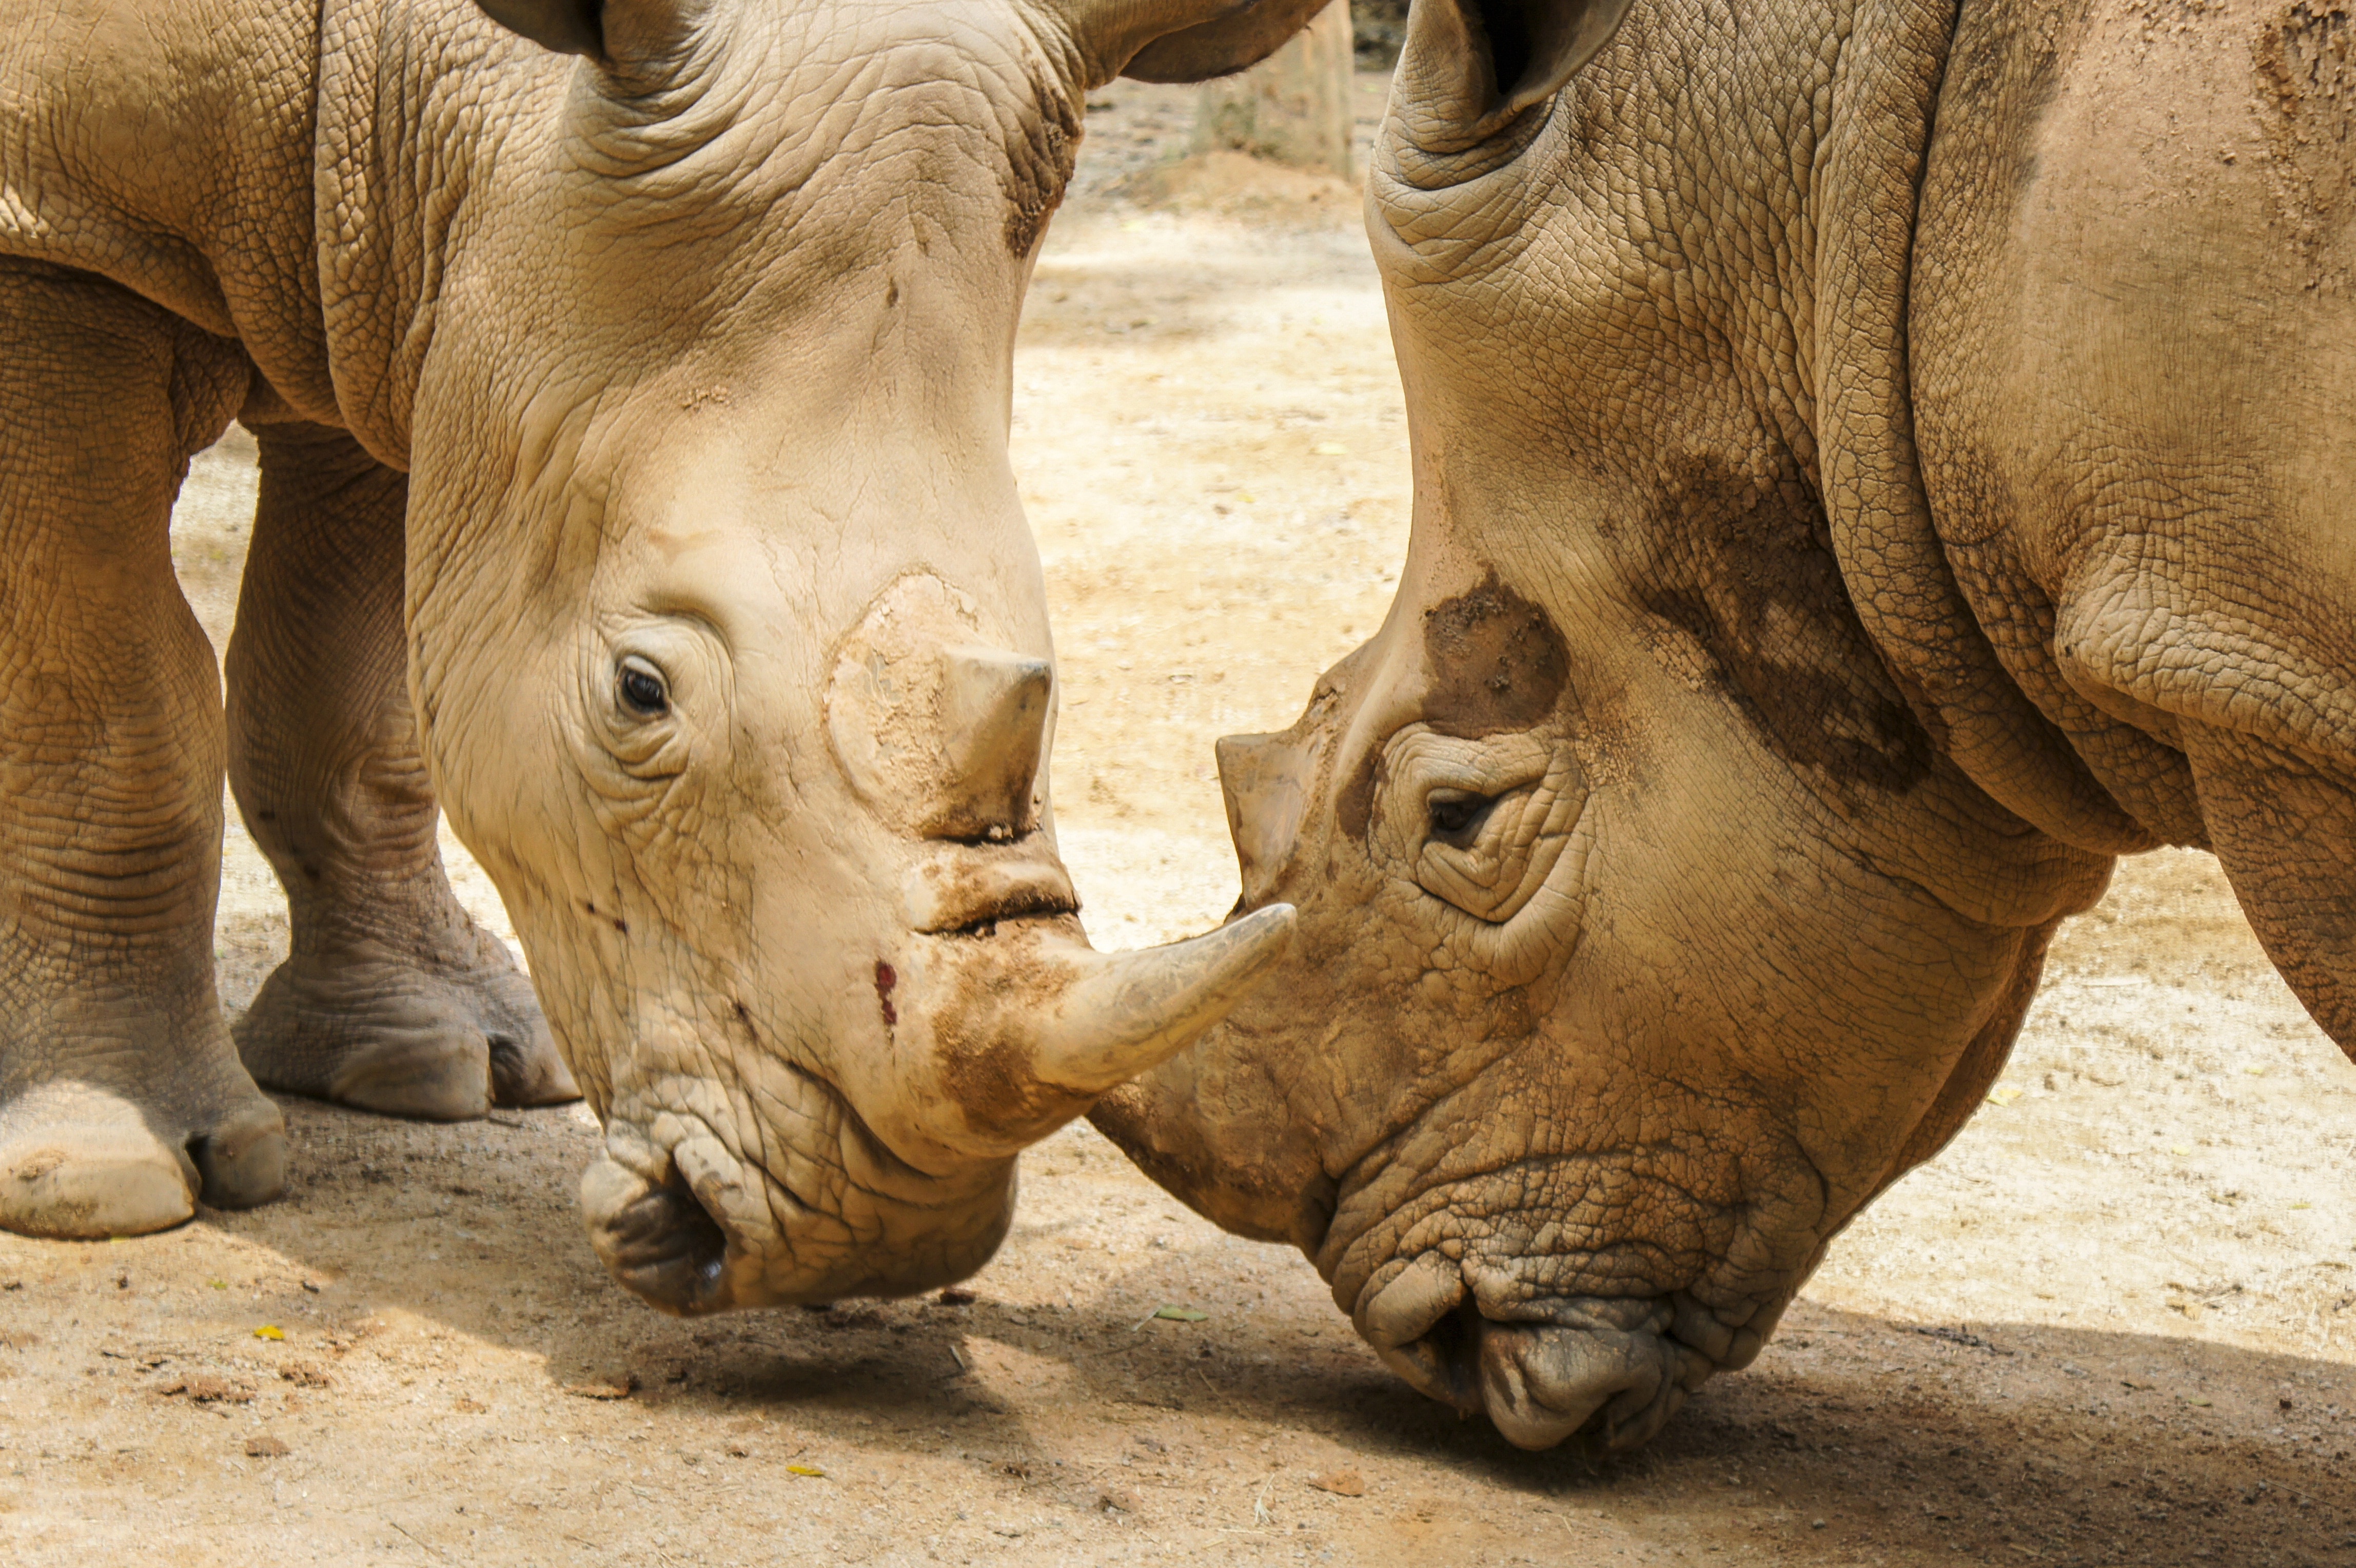 2 rhinos